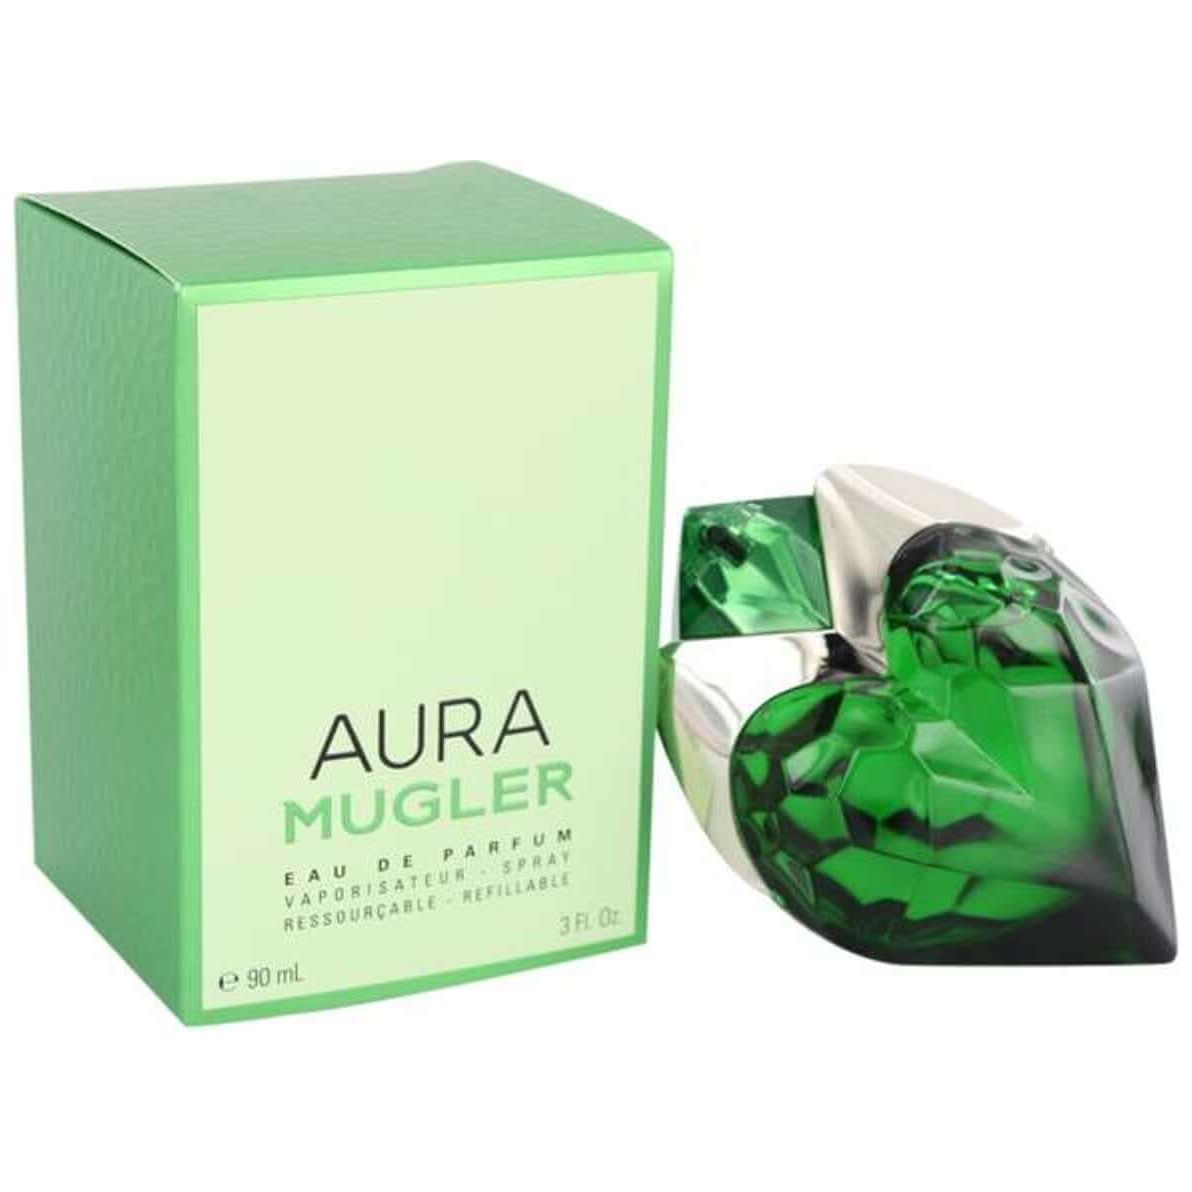 aura fragrance oil